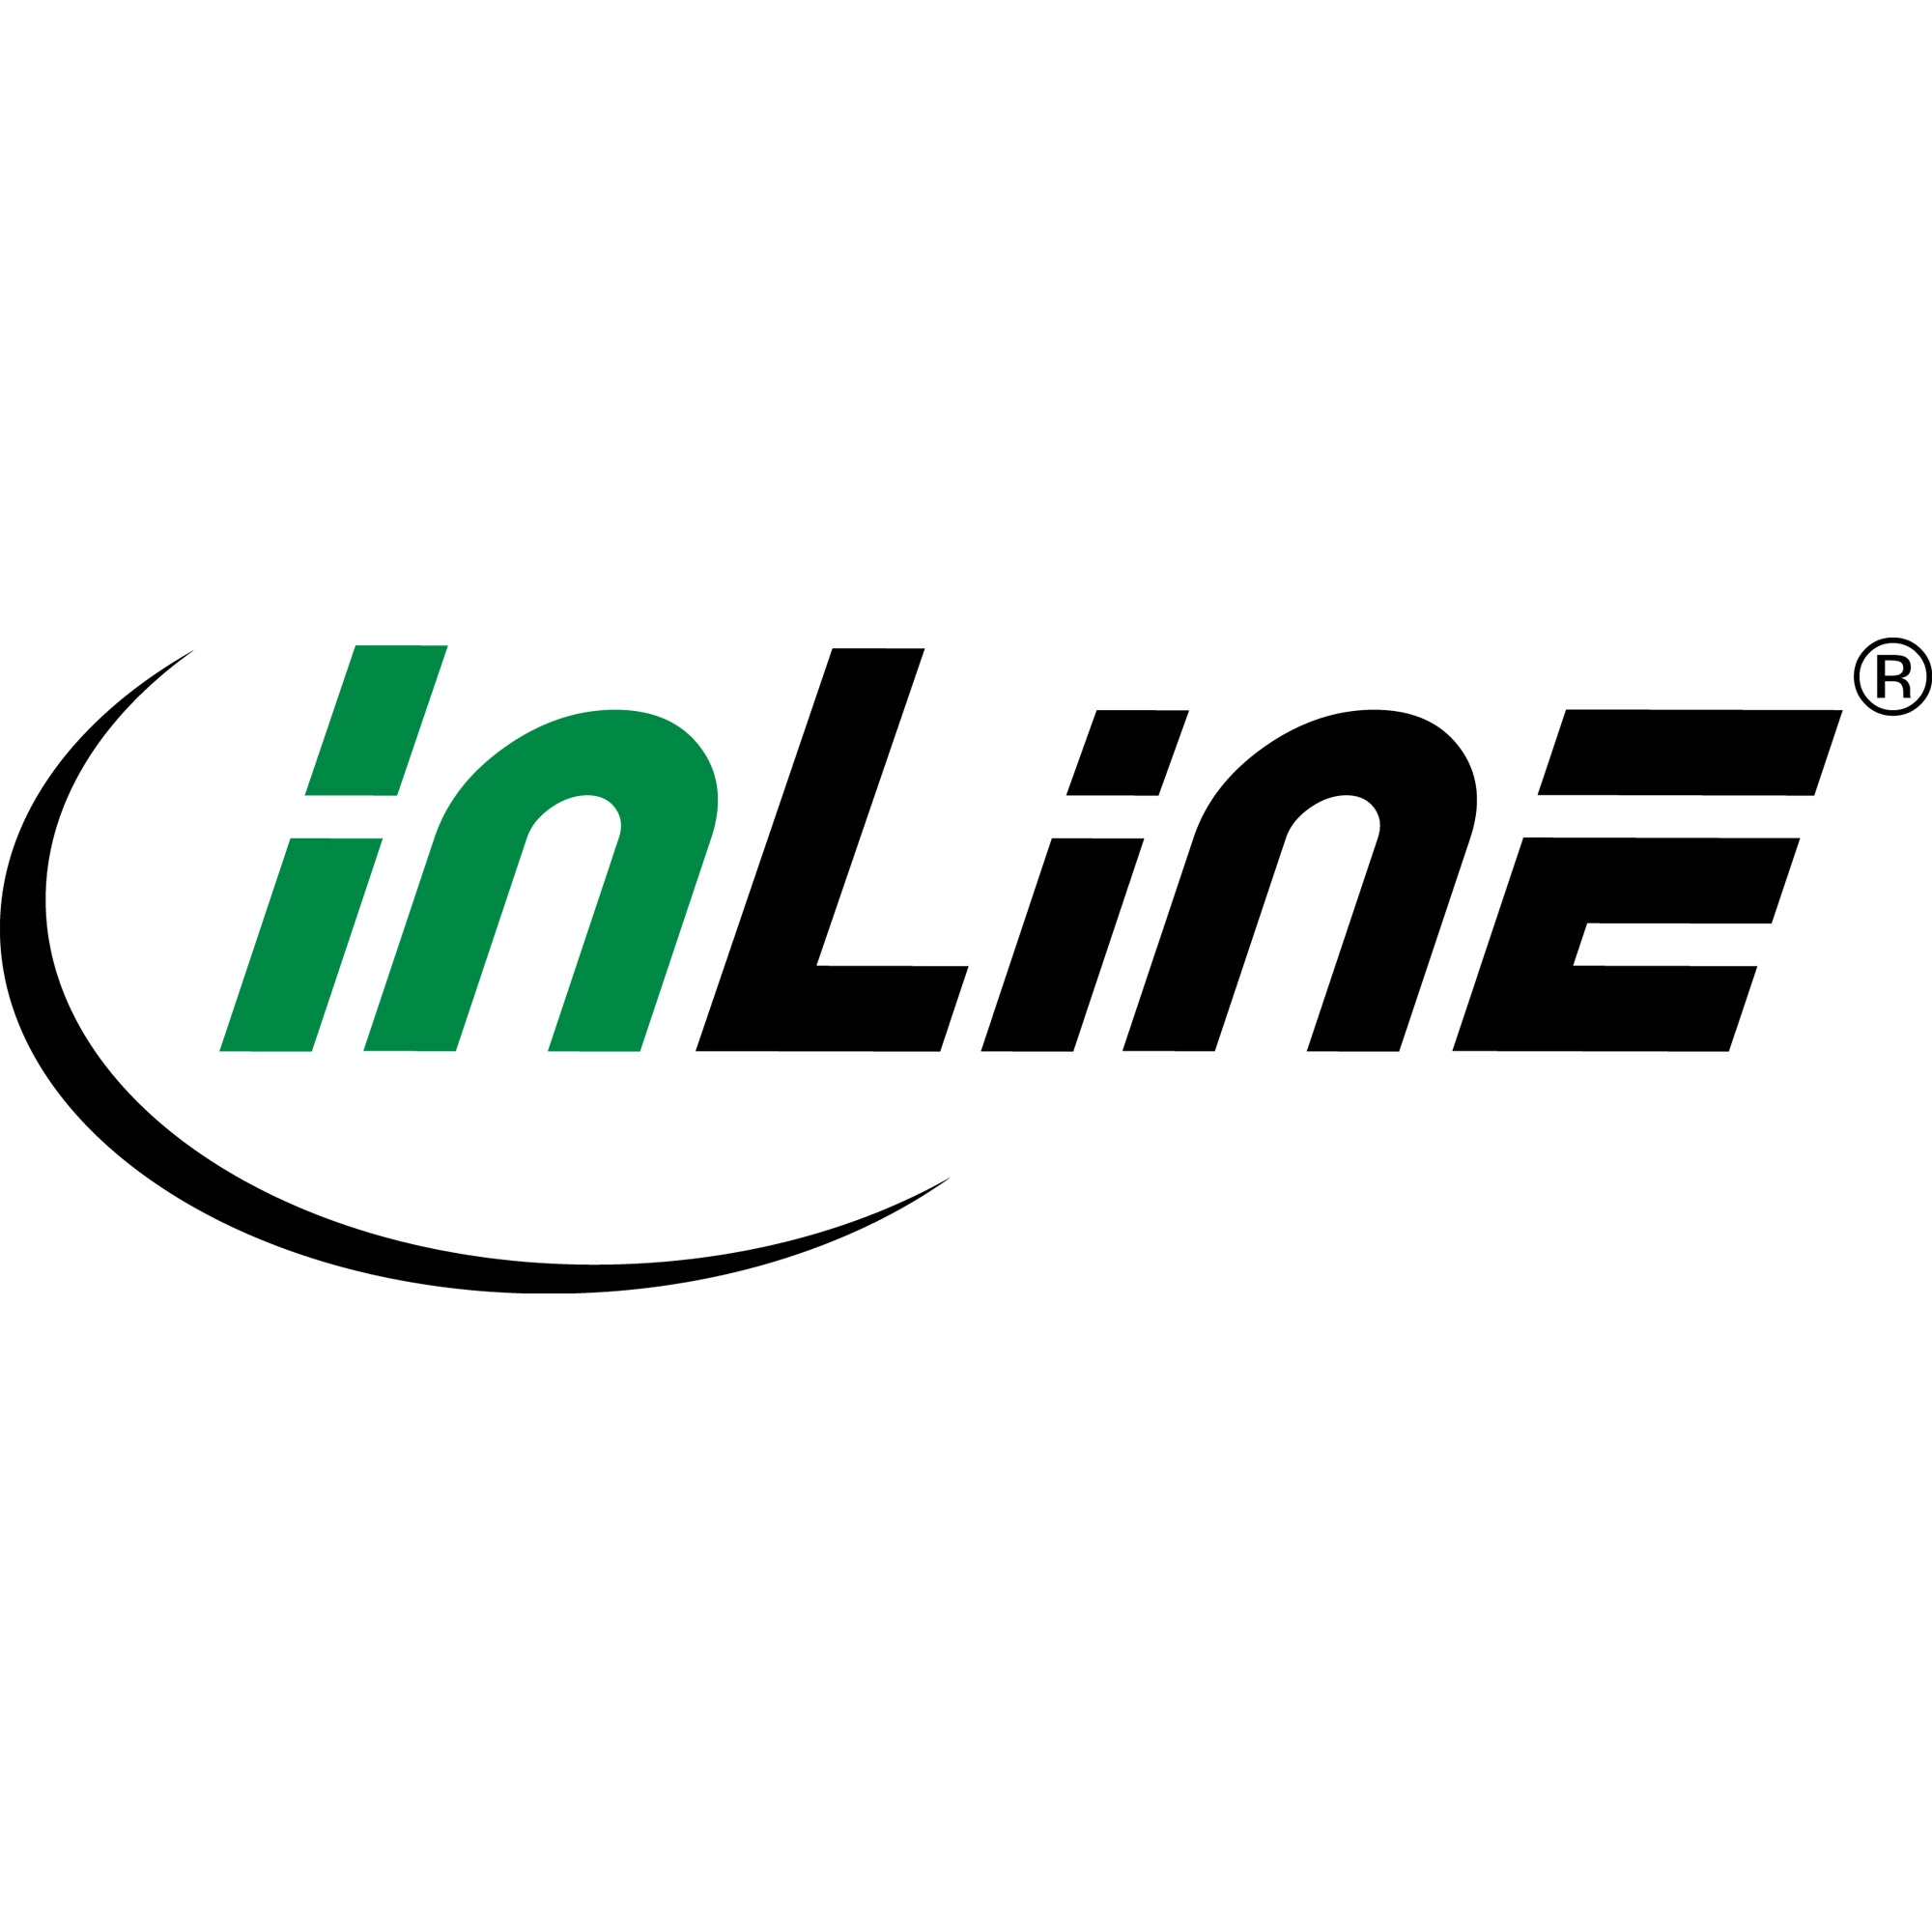 InLine - HDMI-Kabel - 2,0m - Schwarz